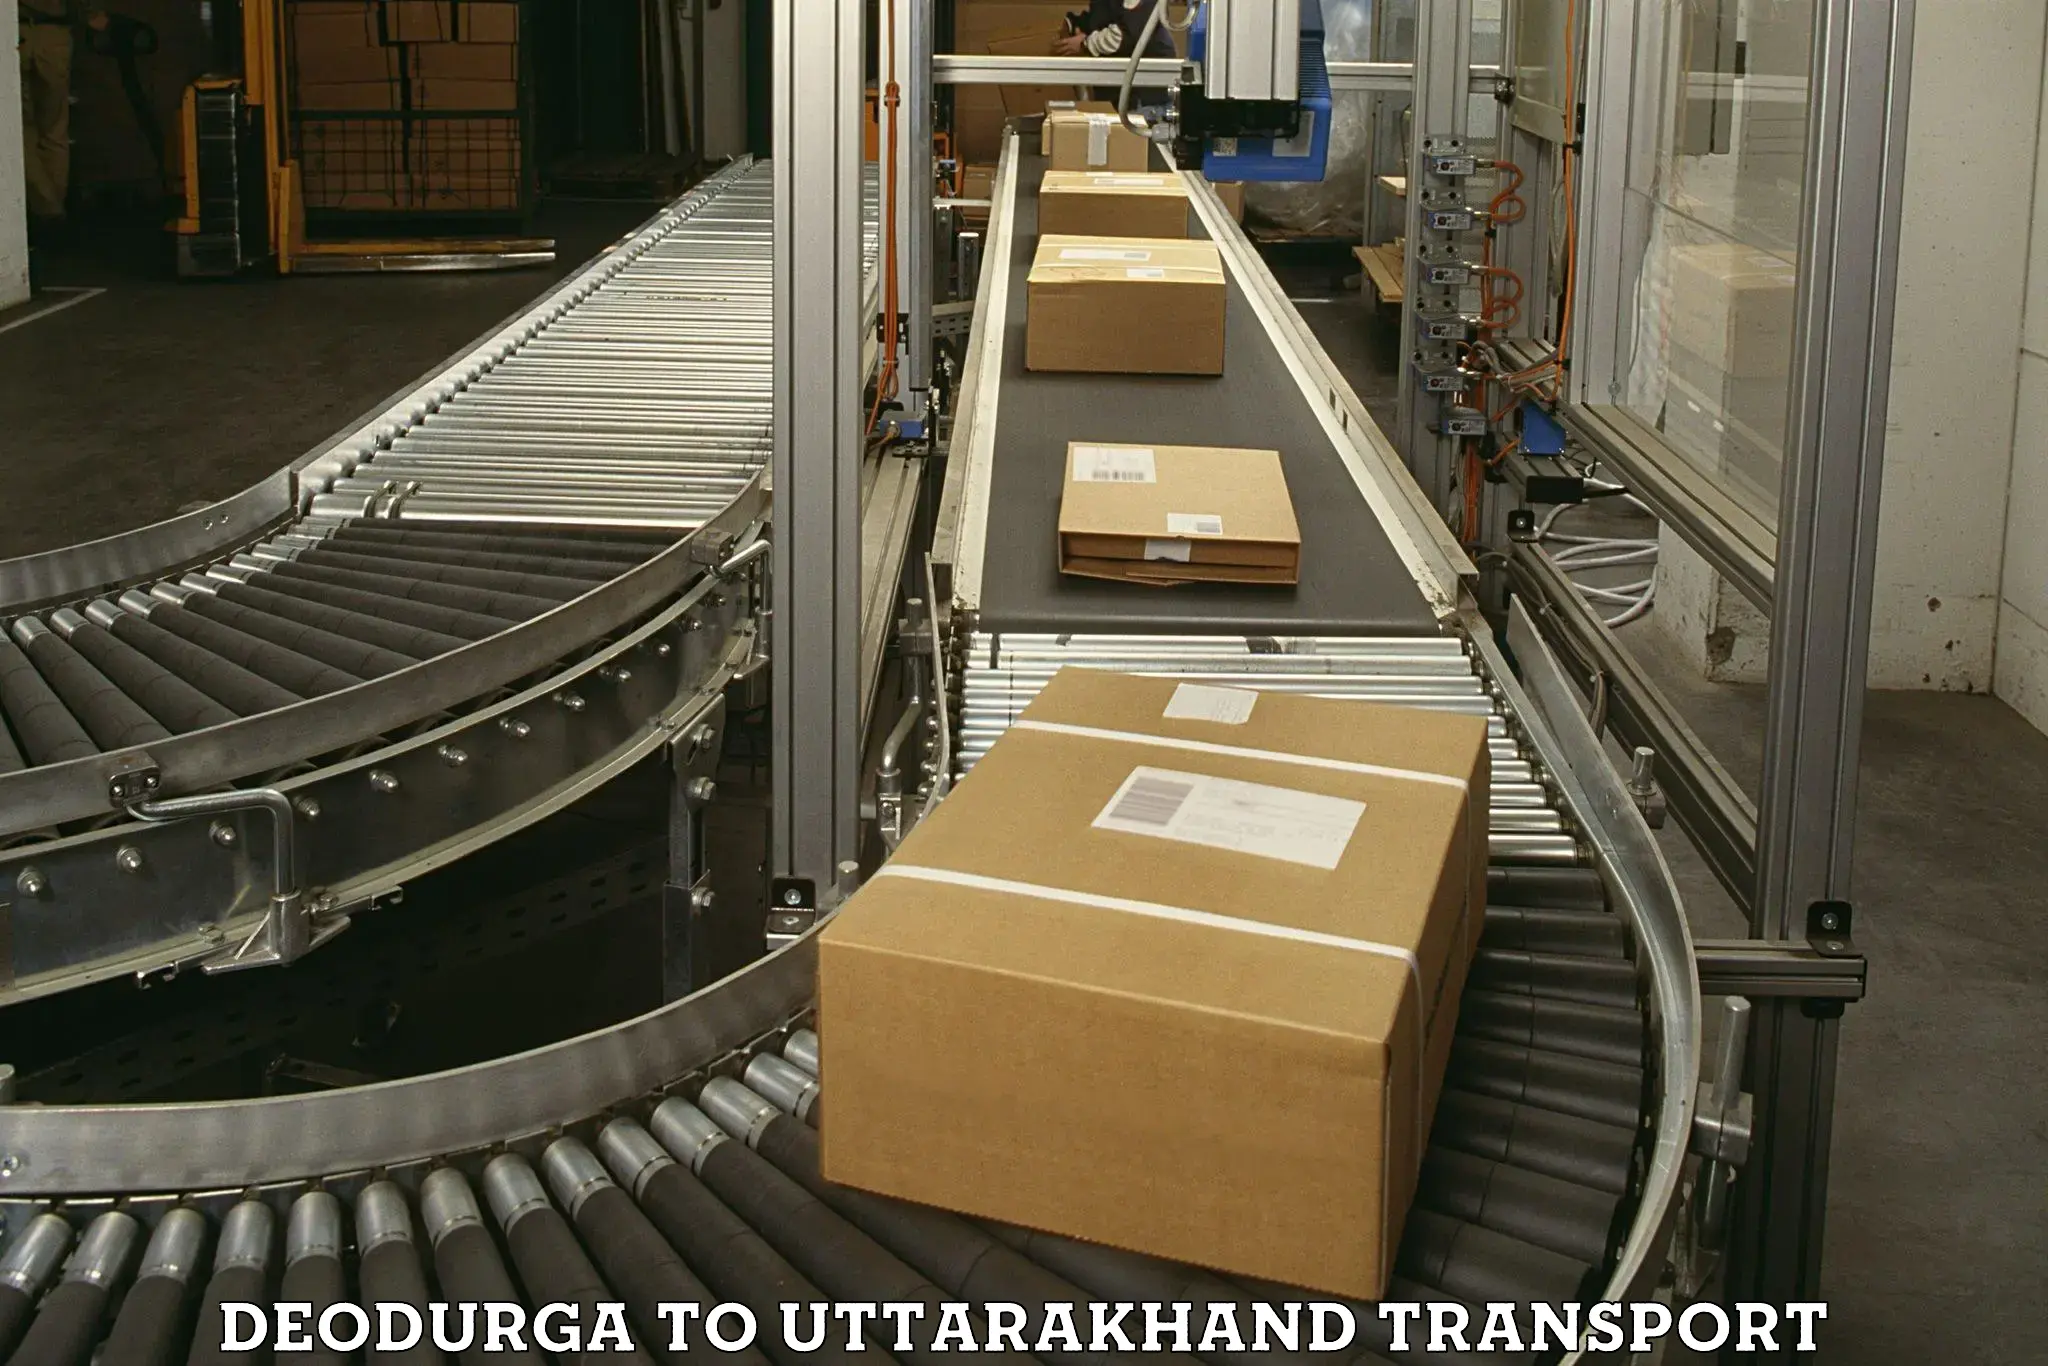 Furniture transport service Deodurga to Lansdowne